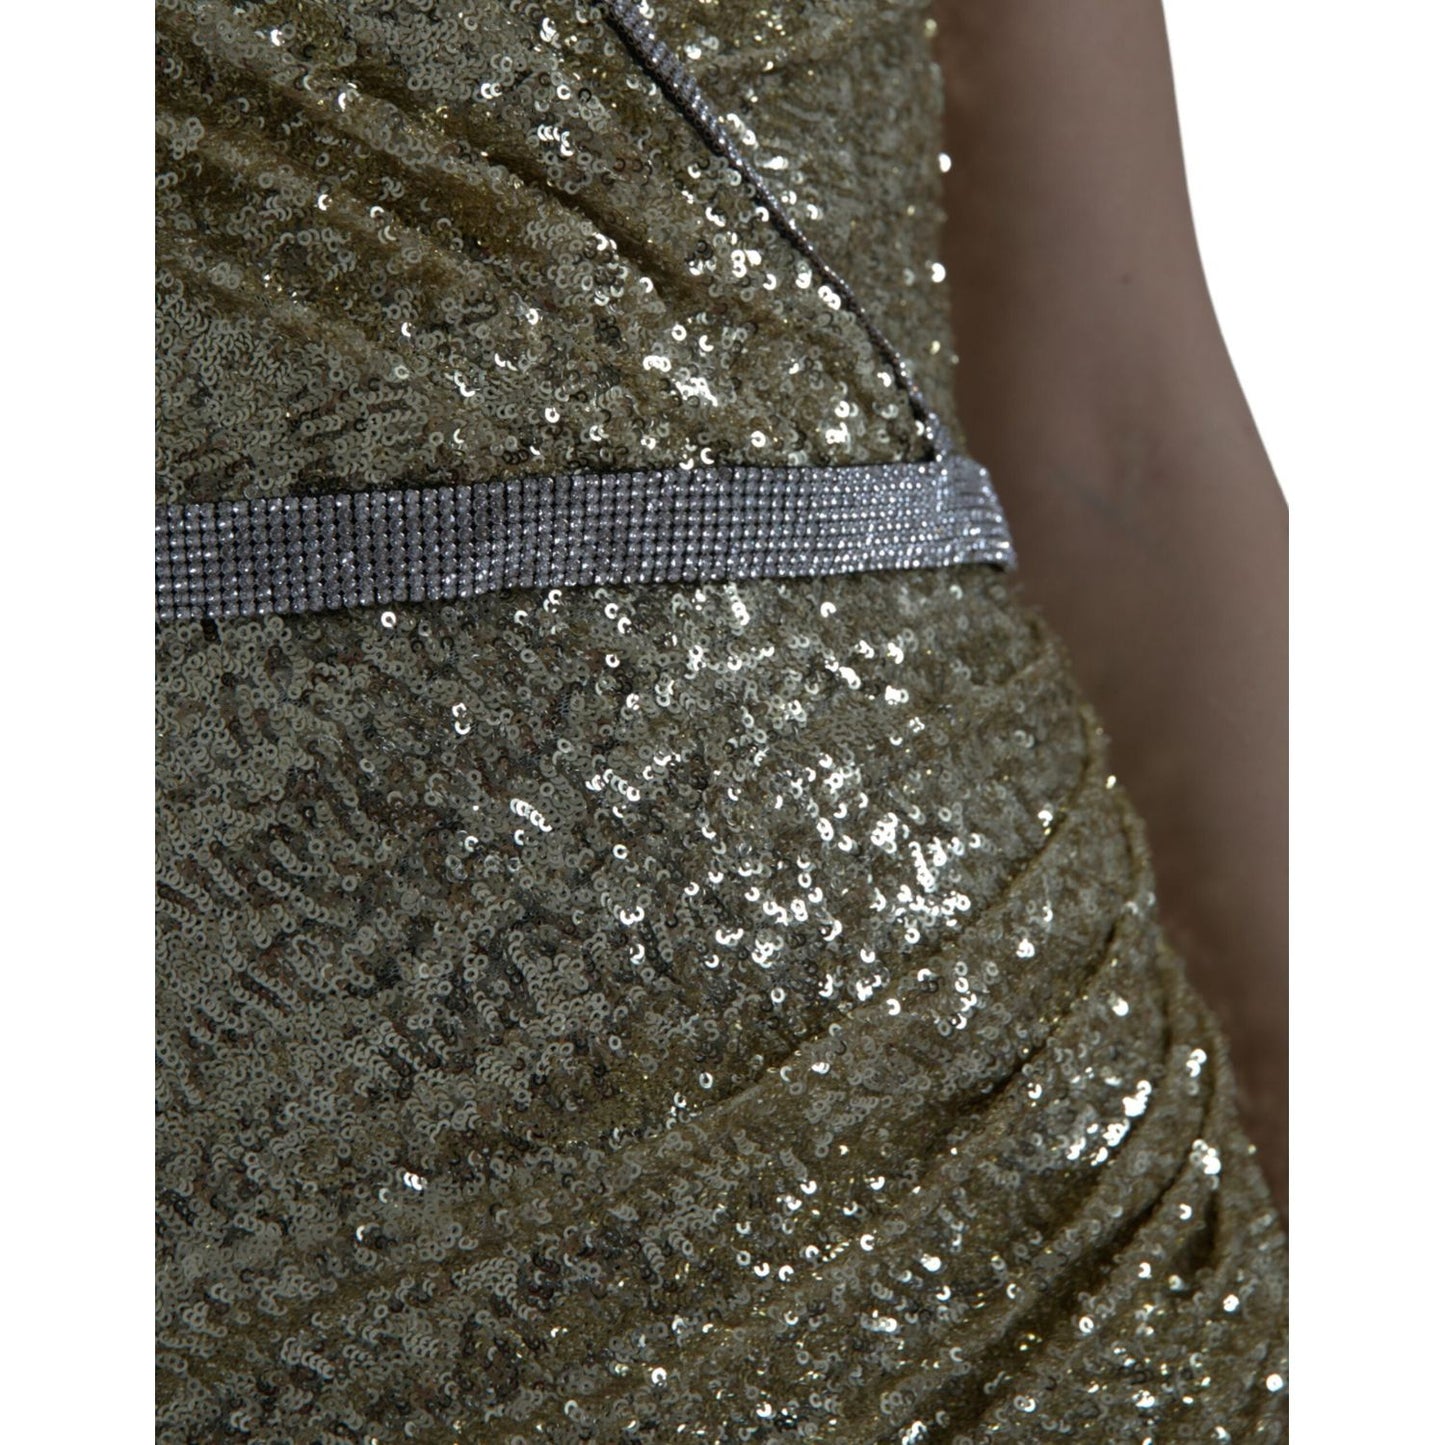 Dolce & Gabbana Golden Sequin Evening Dress with Silk Blend Lining golden-sequin-evening-dress-with-silk-blend-lining